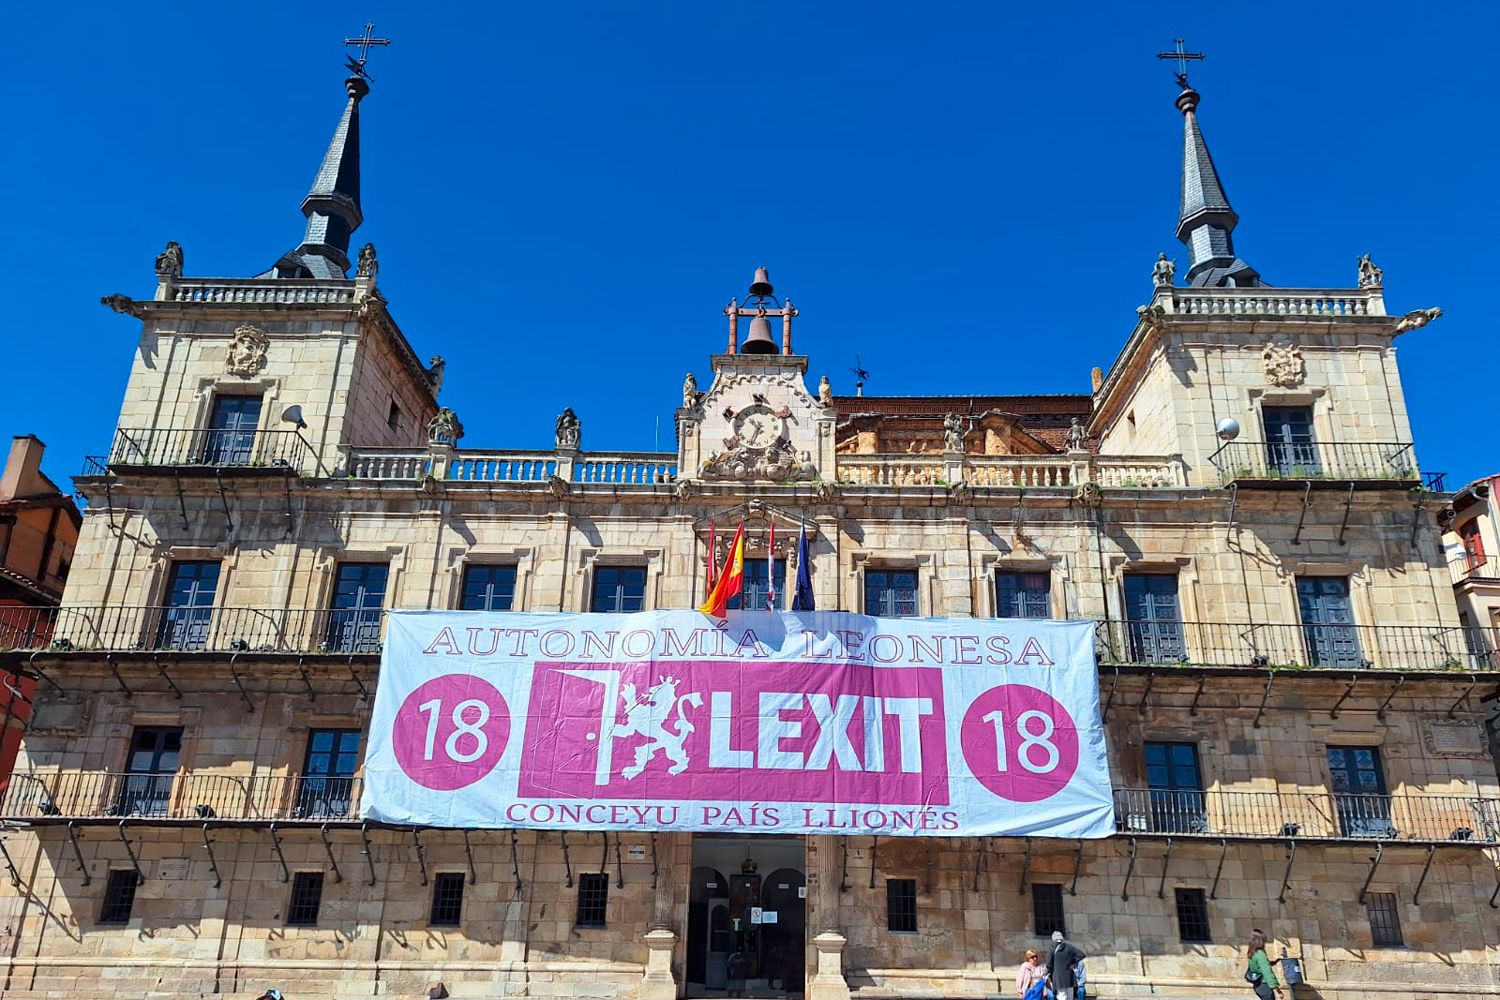 La Plaza Mayor de León vuelve a lucir la pancarta del 'LEXIT' reclamando la autonomía leonesa